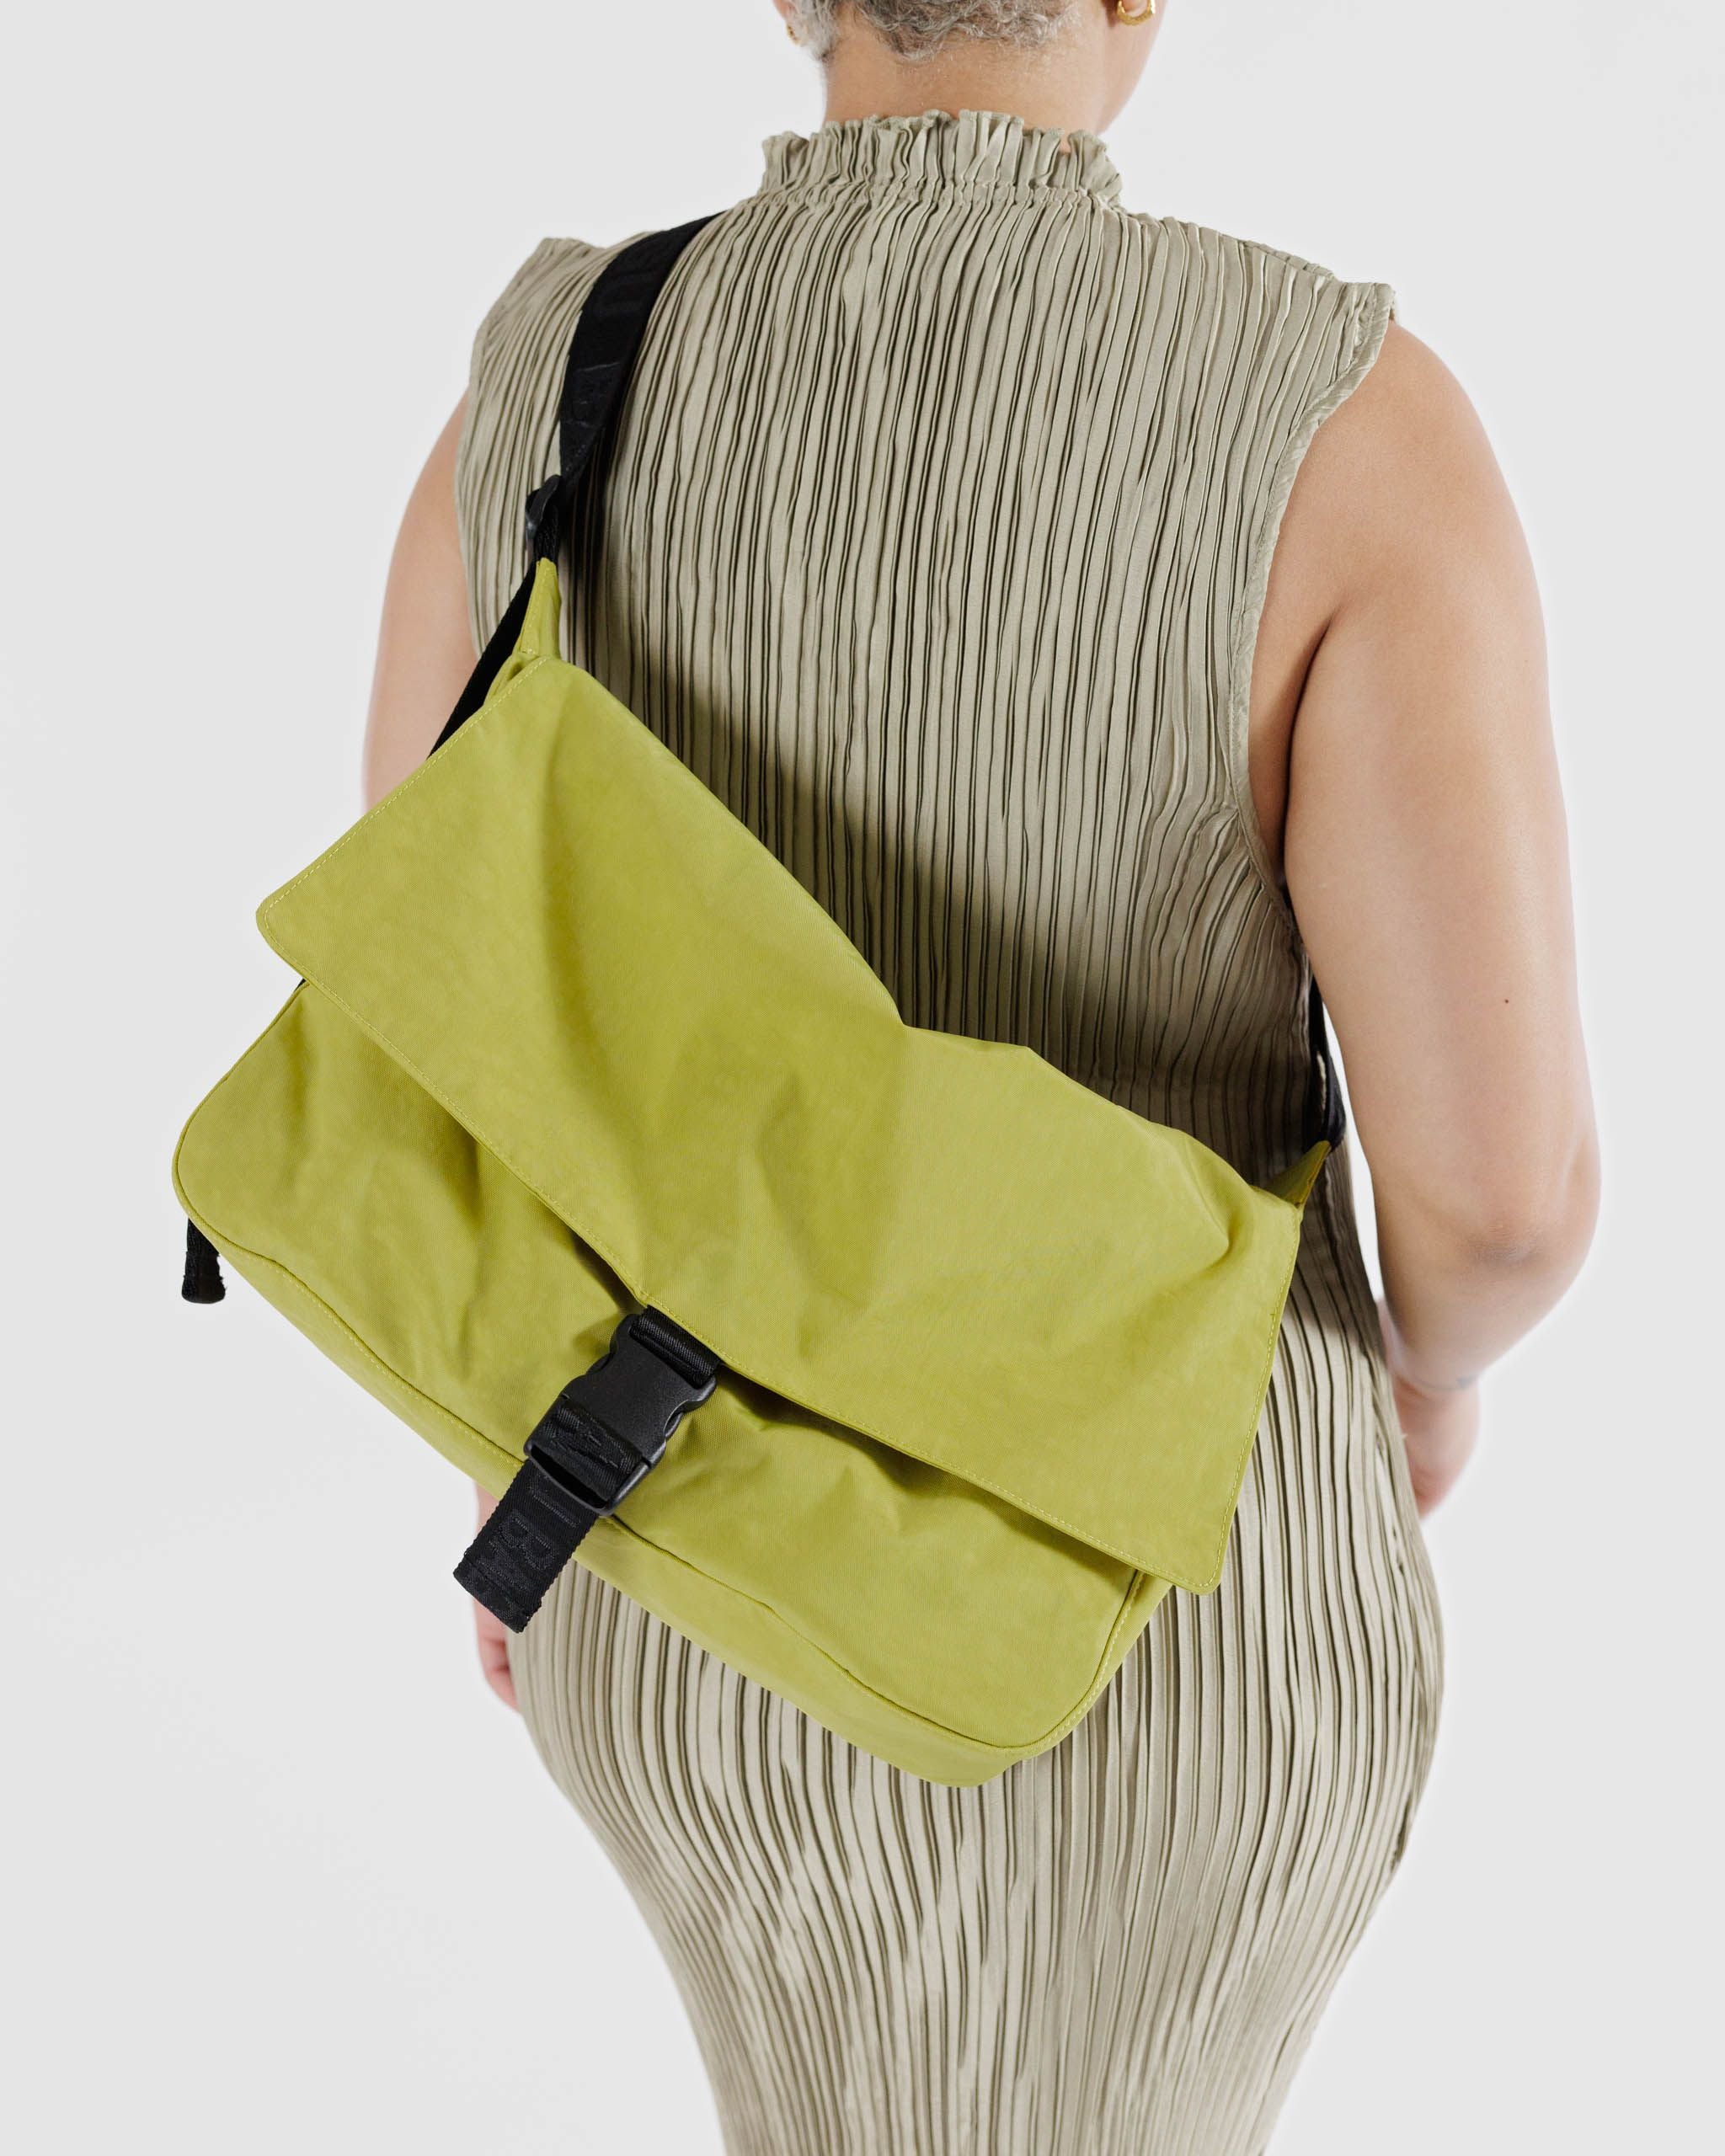 Nylon Messenger Bag